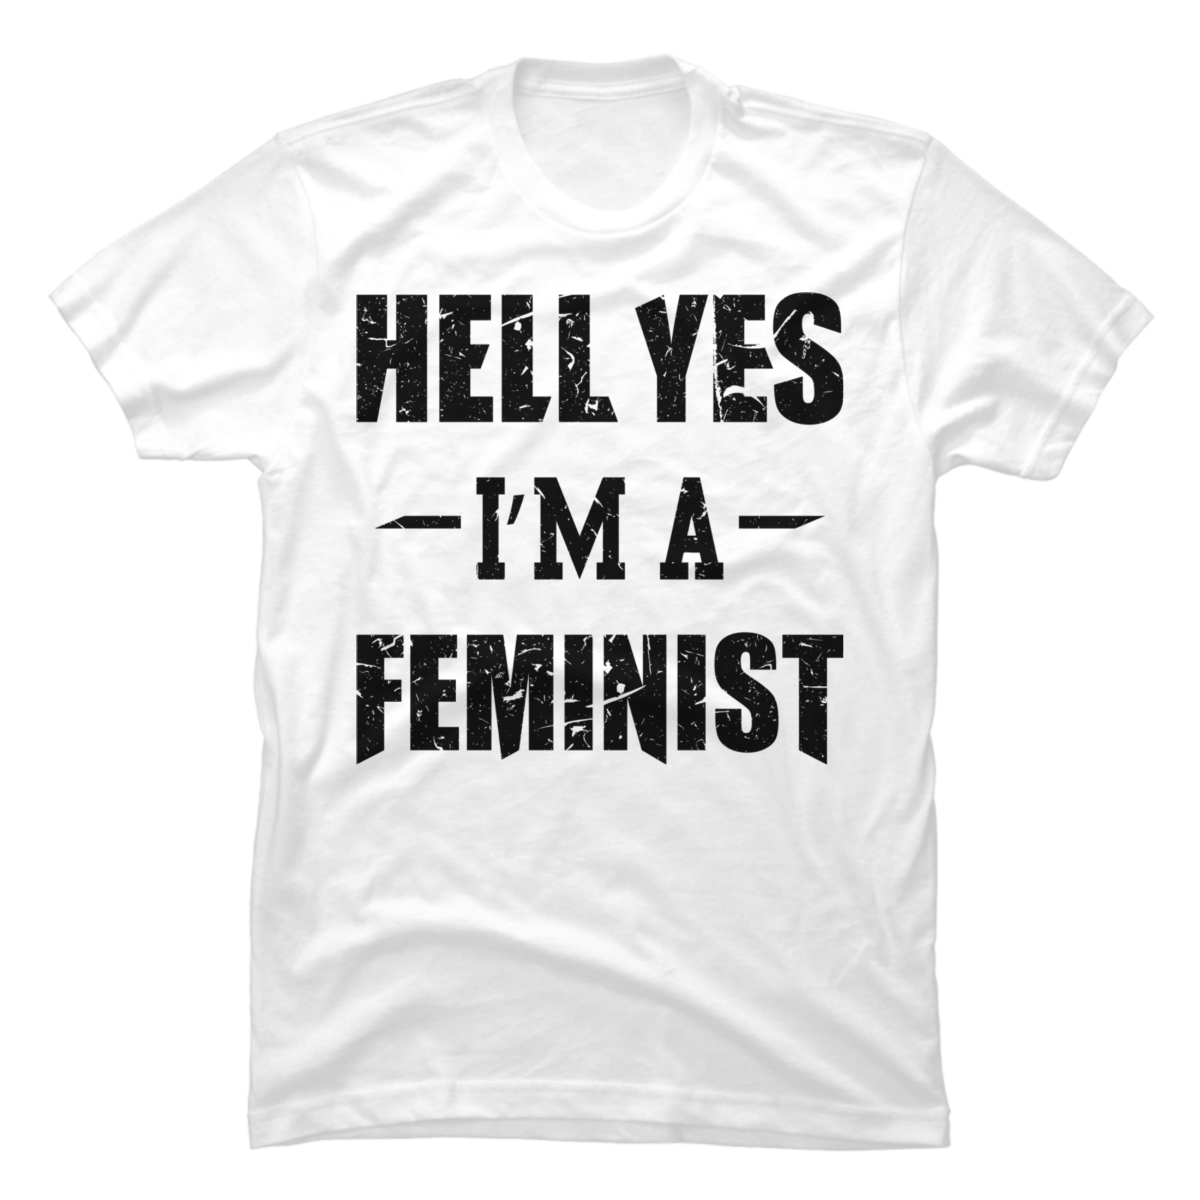 men's feminist t shirt